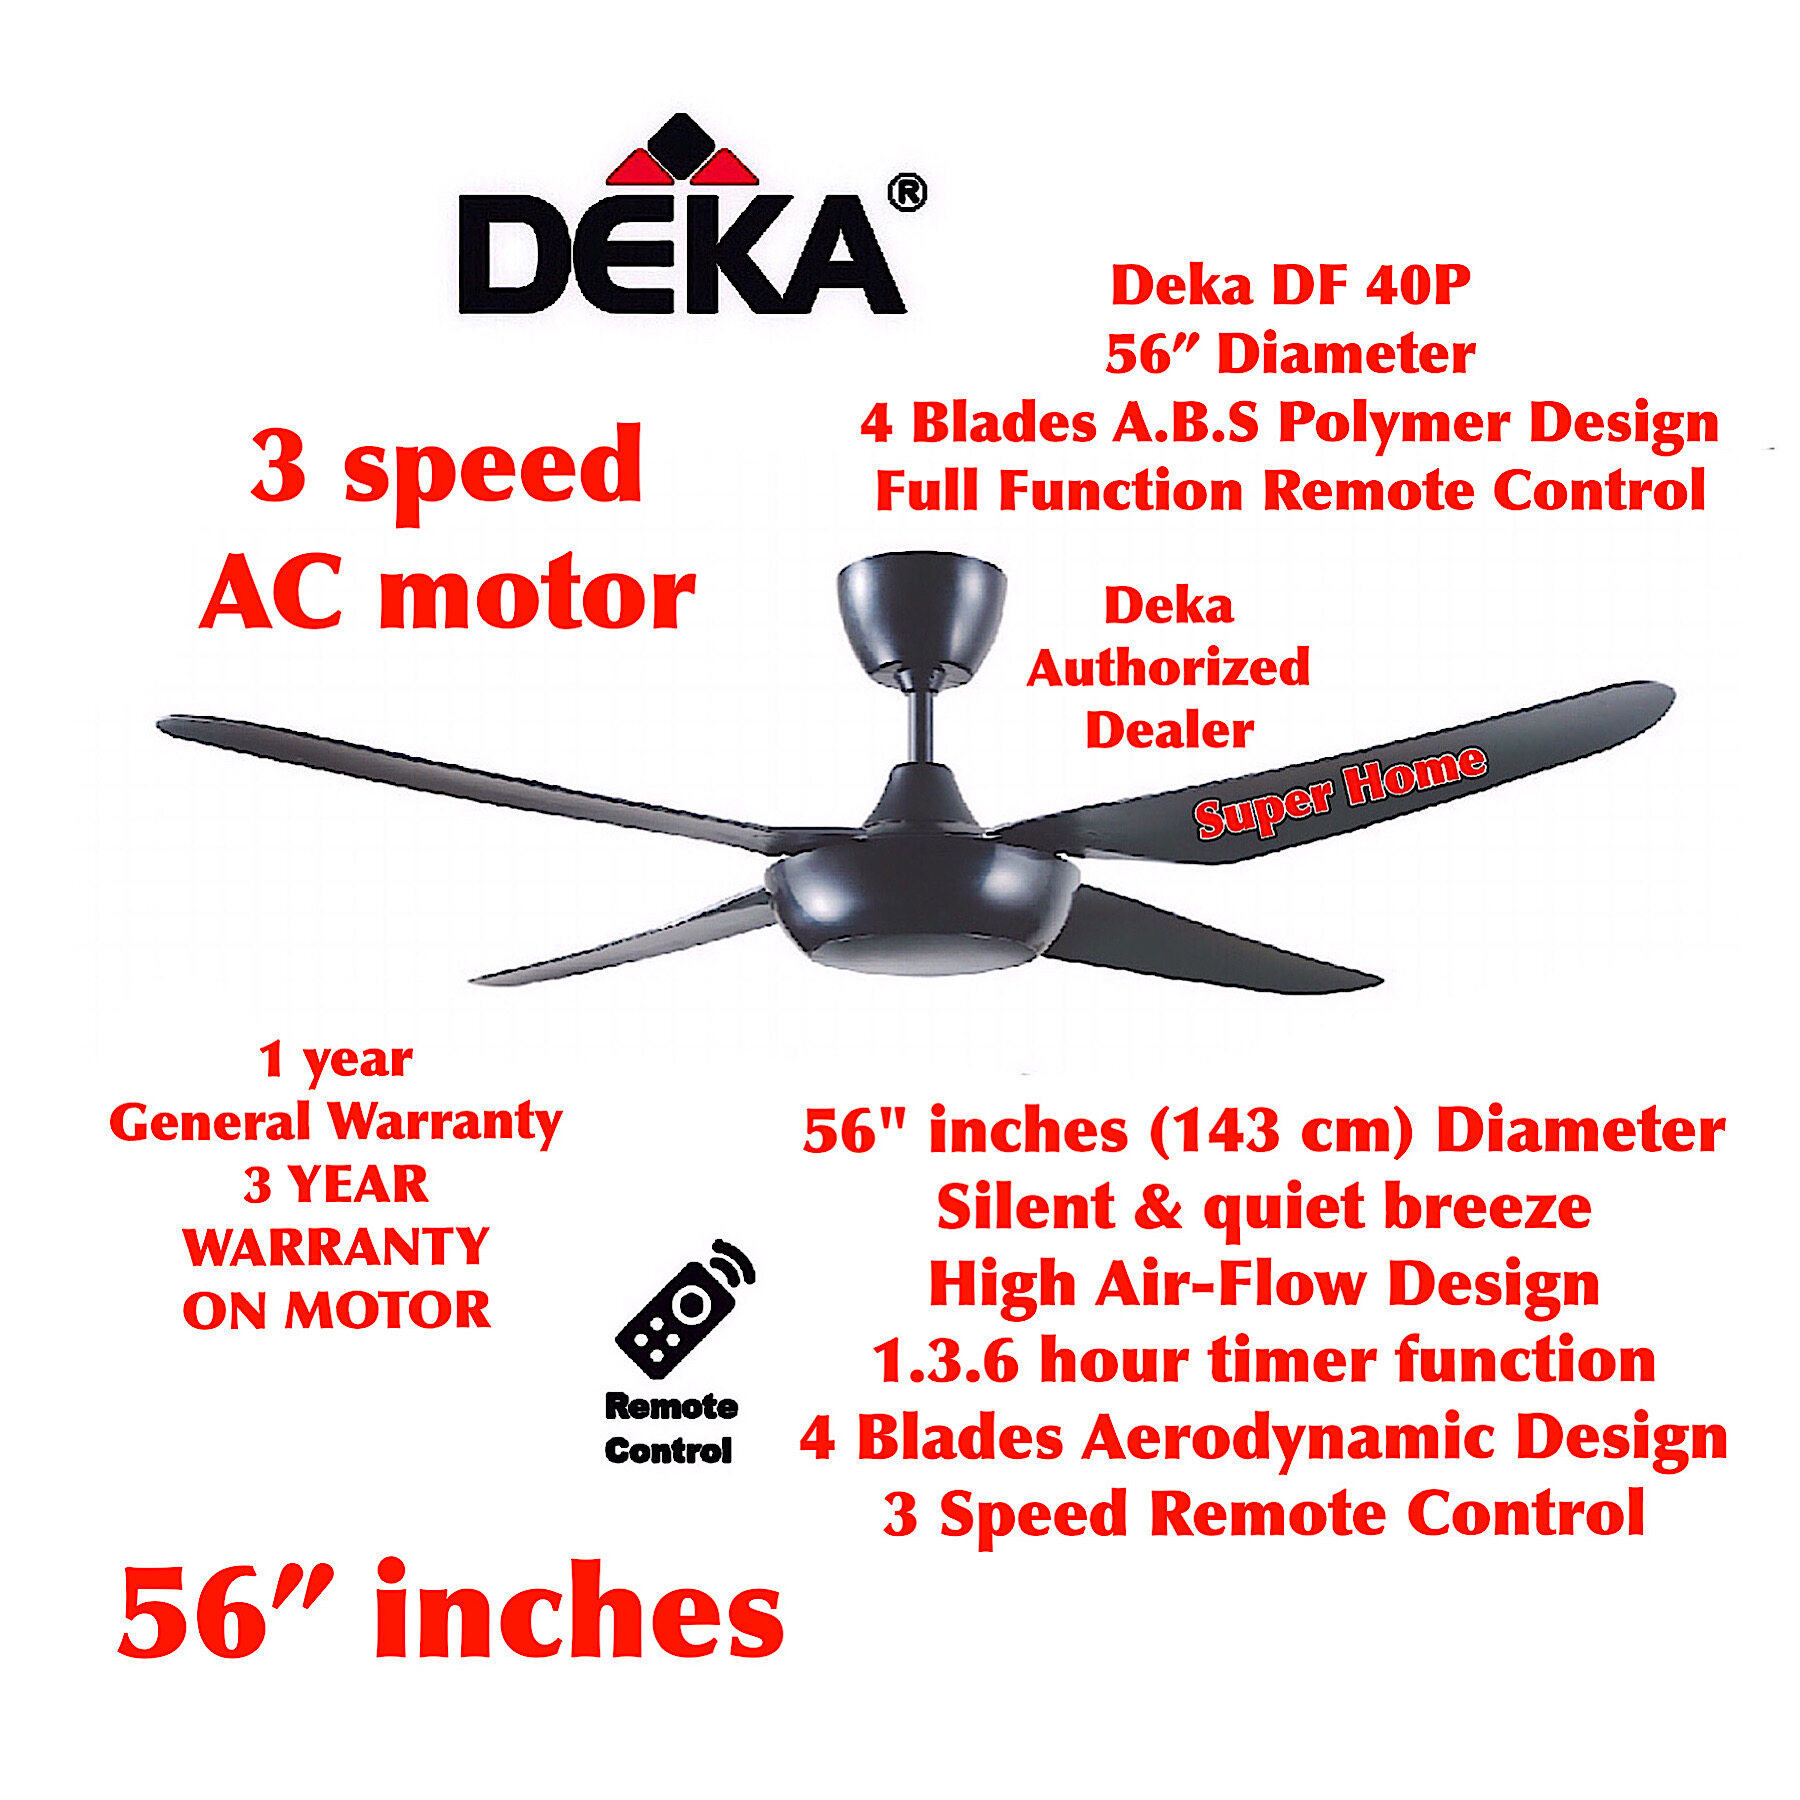 Deka DF40P (Black) 56 inch 4 Blades A.B.S Polymer Design Remote Control Ceiling Fan - 3 Speed - Black